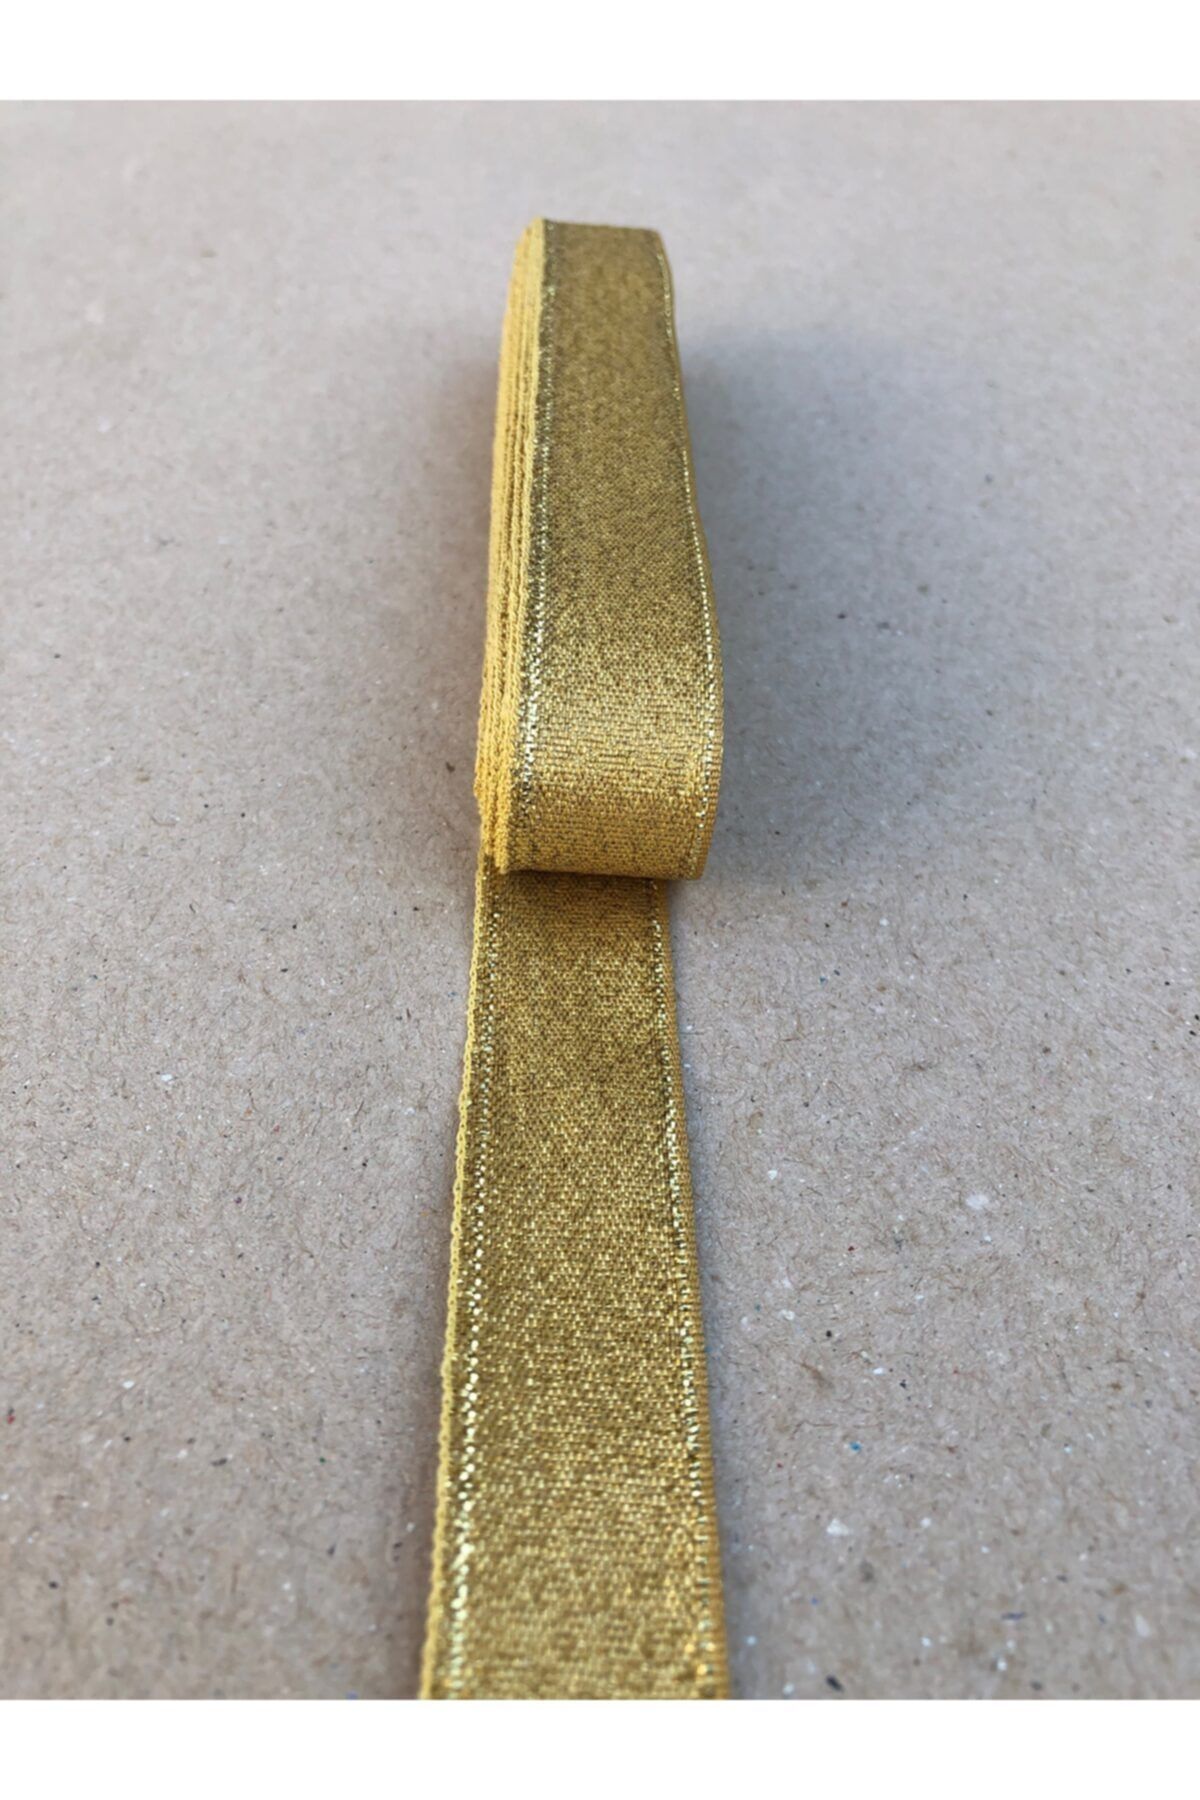 Kreatif Mağaza 10 Metre Altın Simli Kurdele (2 cm En)